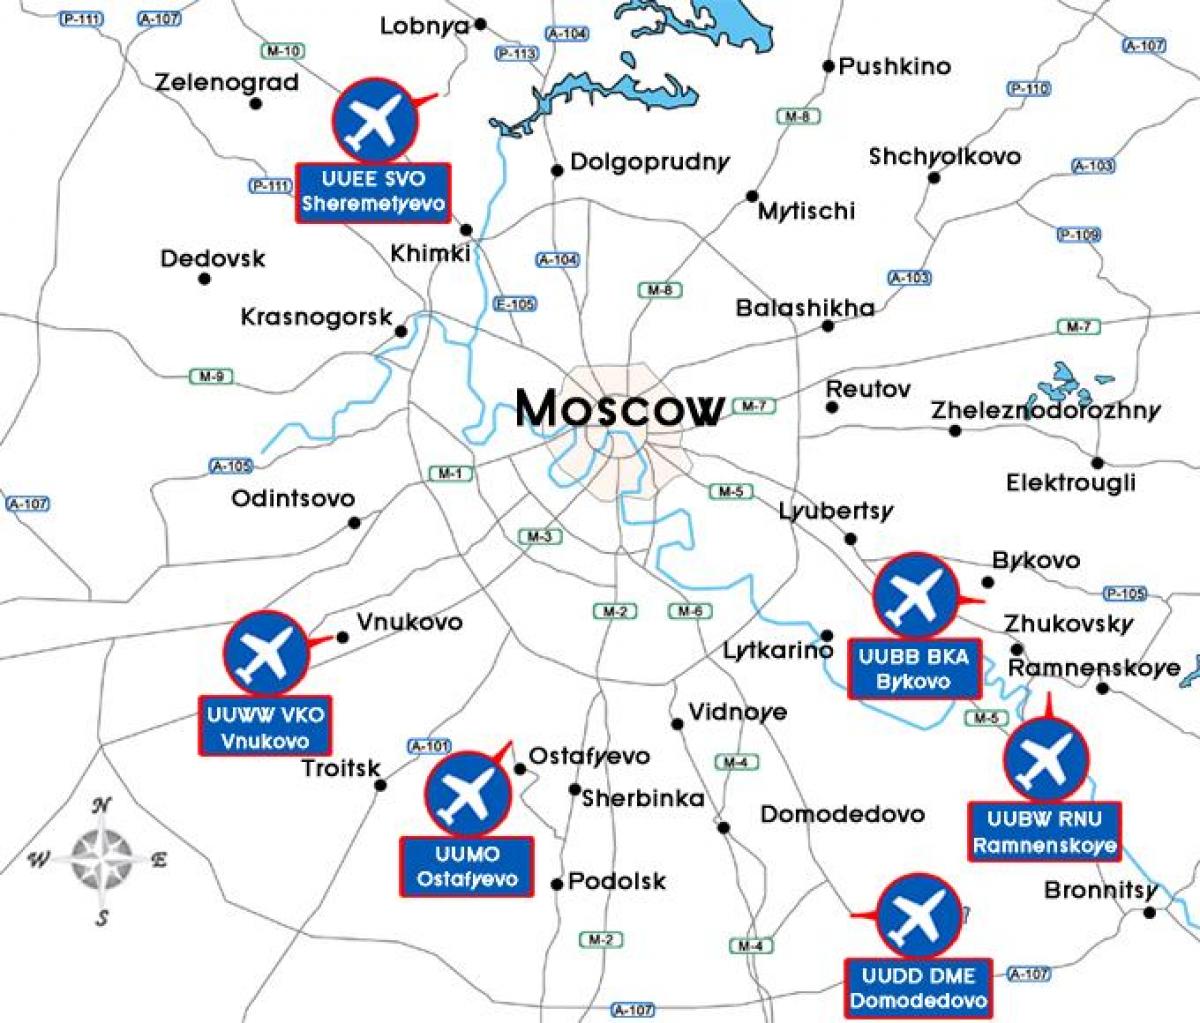 مطار موسكو خريطة terminal